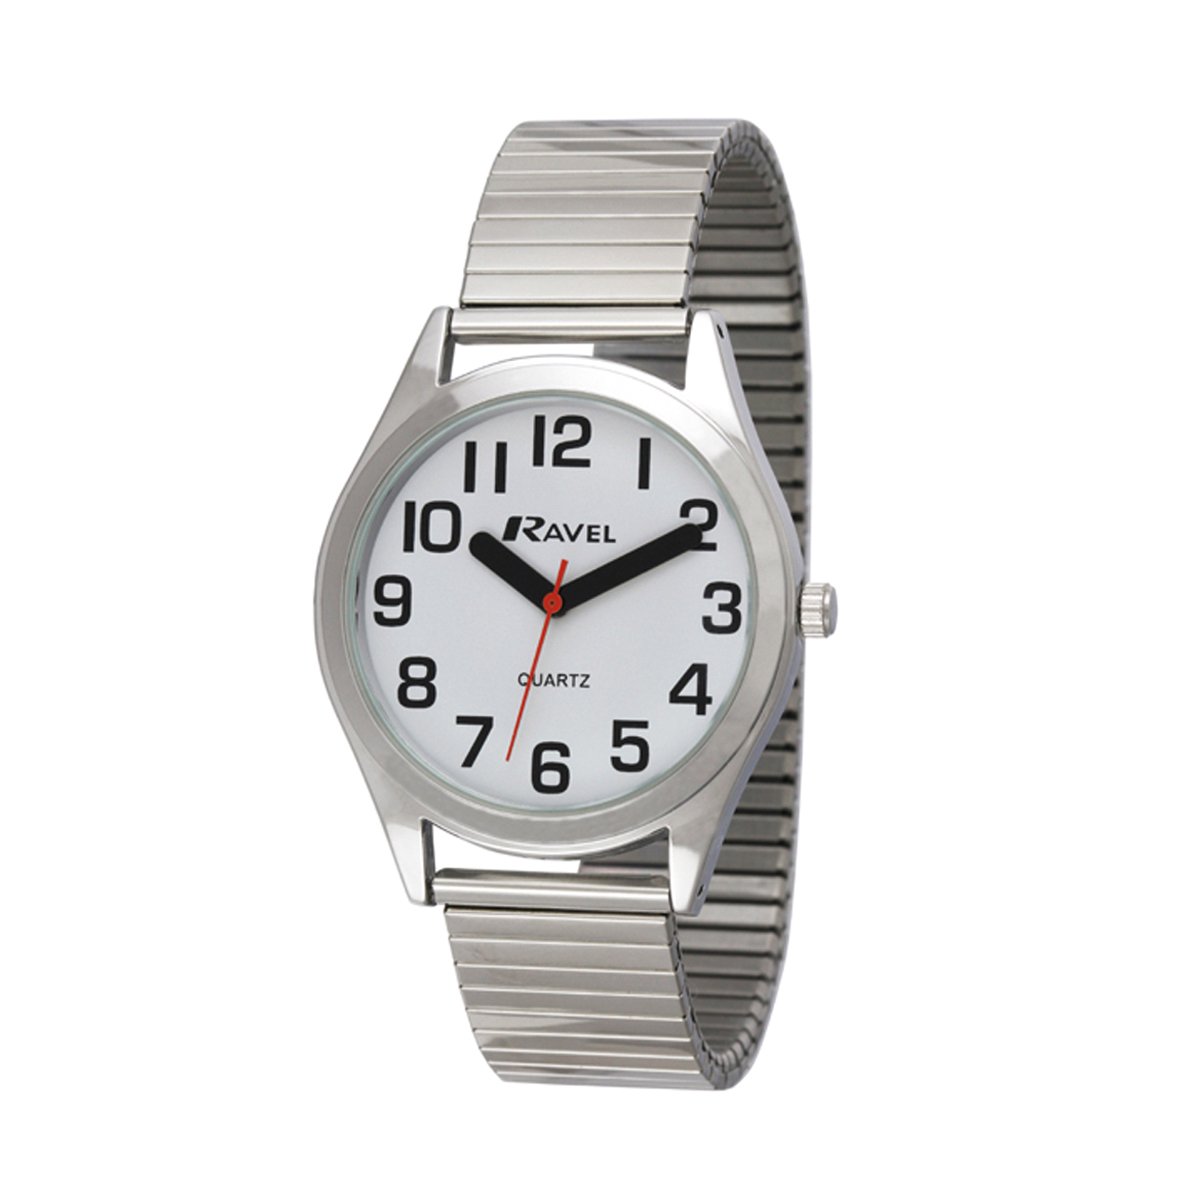 Ravel - heren super gewaagd zicht hulp roestvrij staal expander armband horloge met grote getallen en handen (36mm horlogekast) - Analoge Kwarts - R0225.01.1 - zilverkleurig / witte wijzerplaat